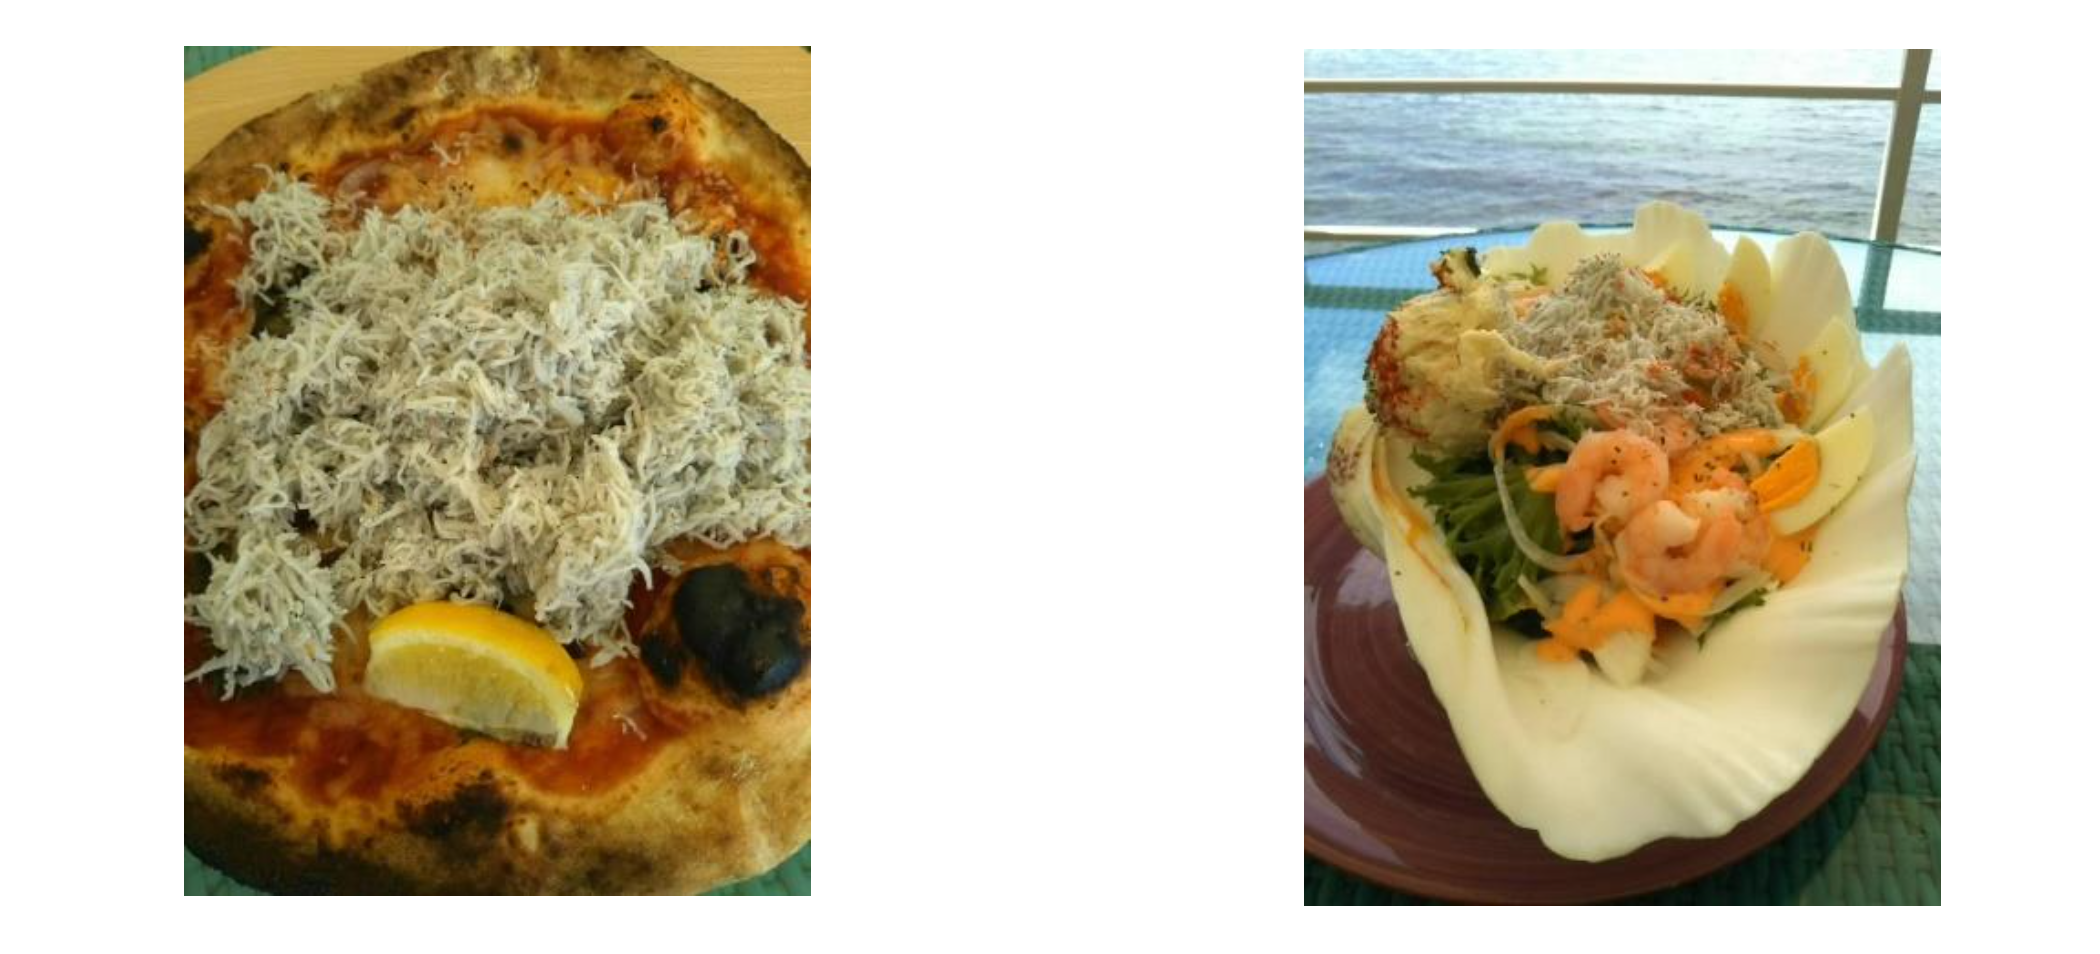 ピザの上に淡路島名産のシラスをどんどん盛ってくれる